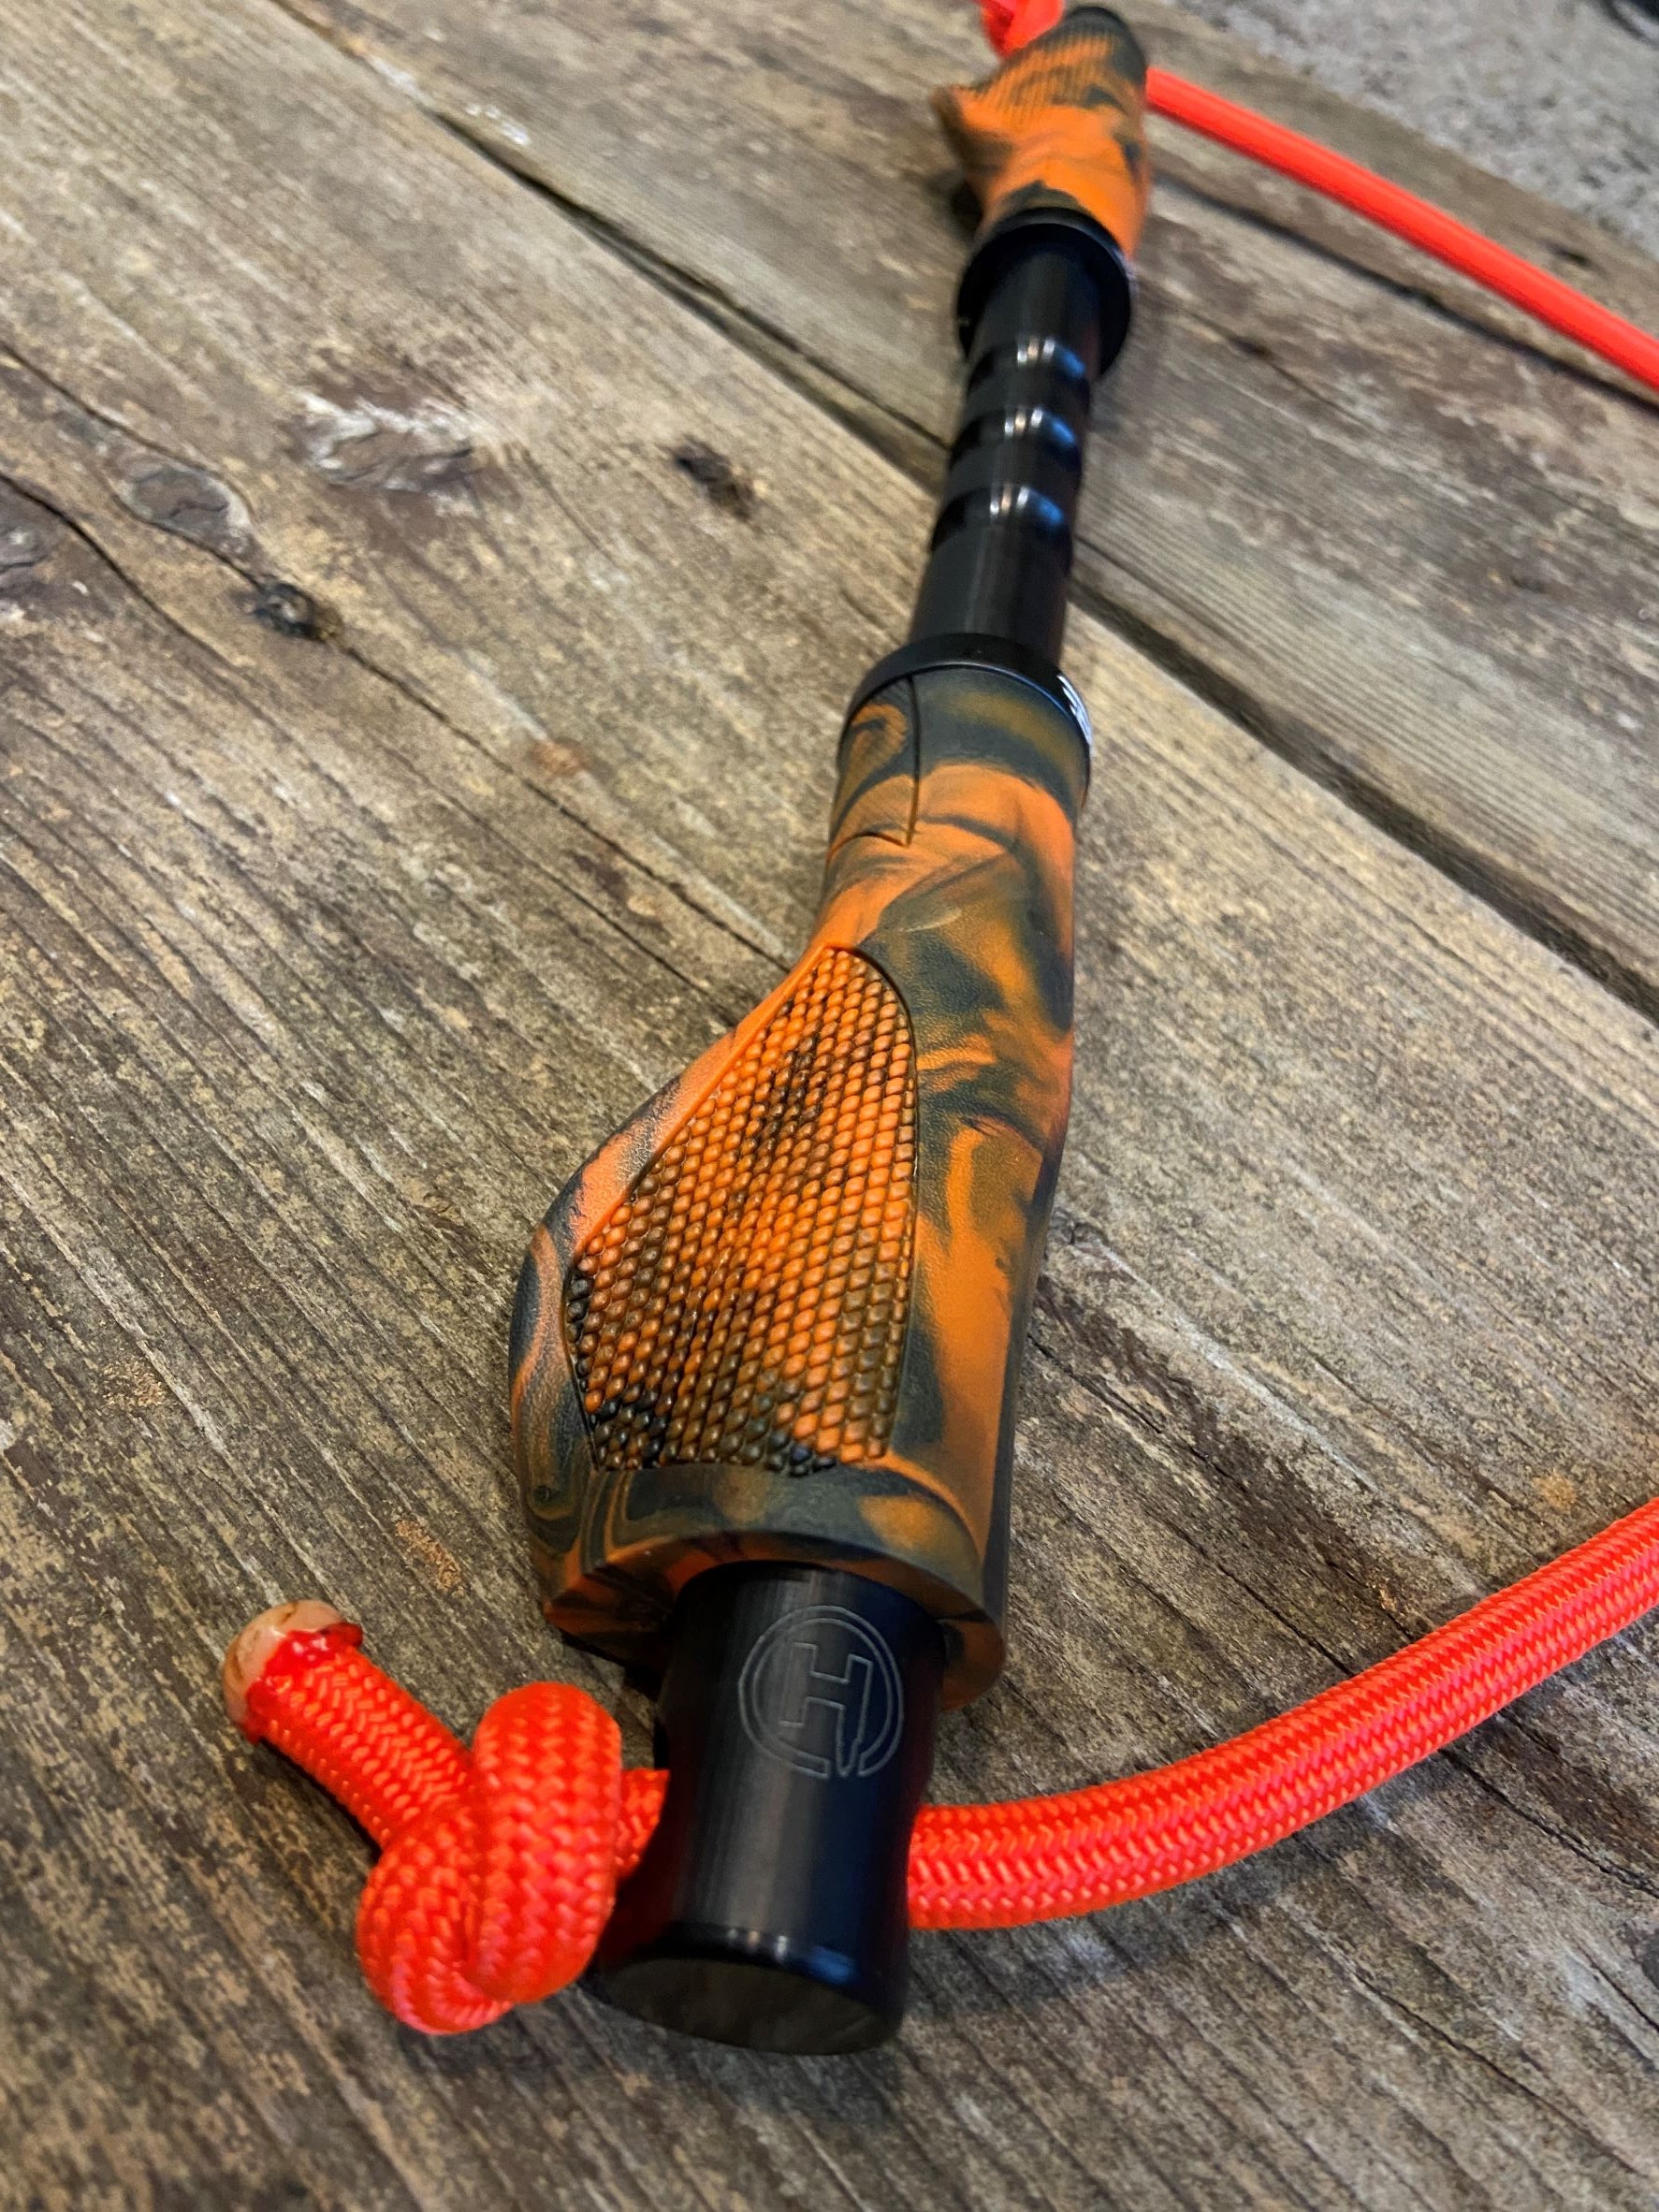 DIY Fishing Rod Paracord Grip  Diy fishing rod, Fishing diy